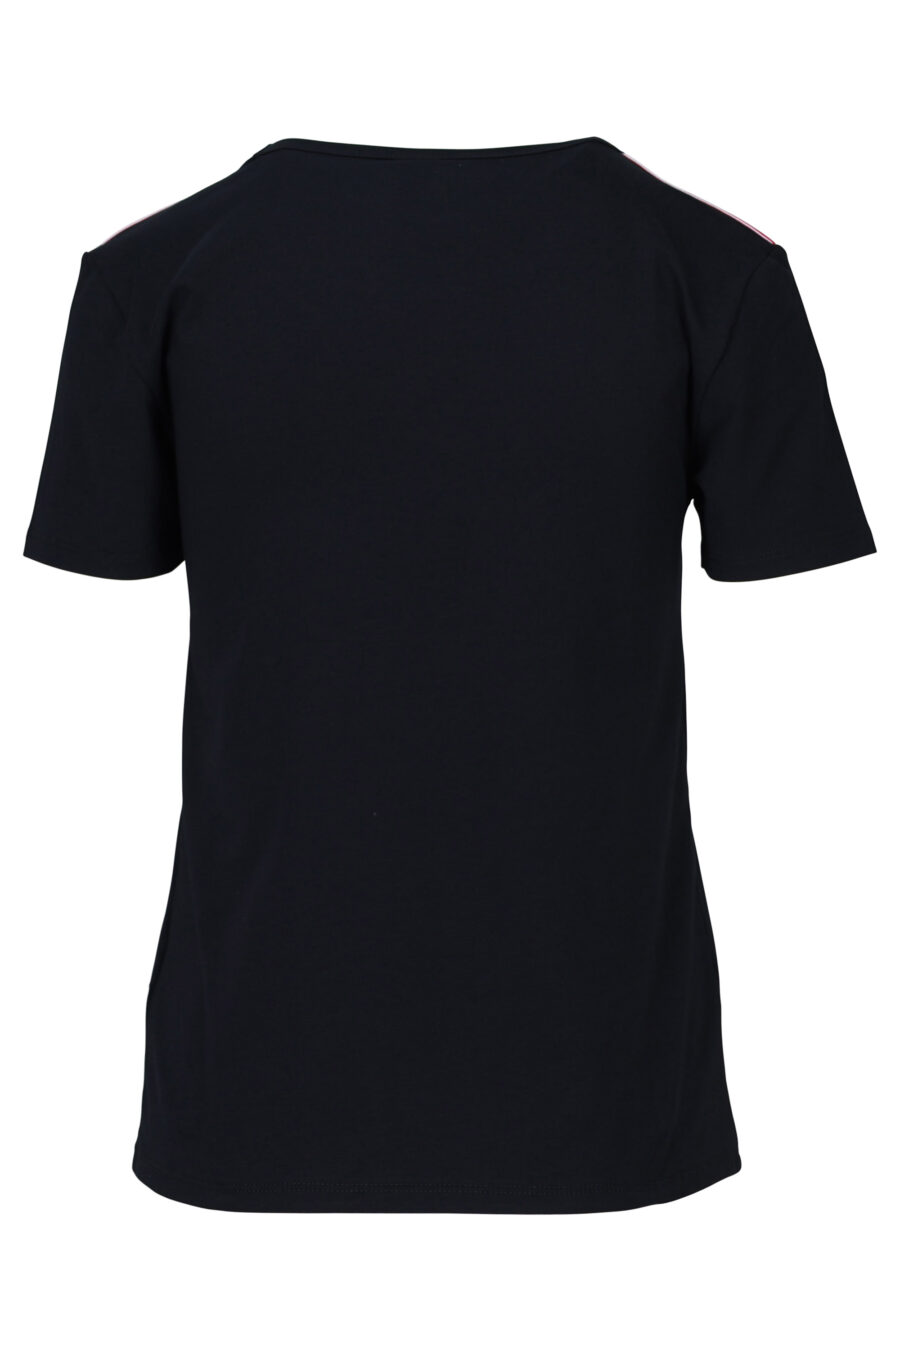 Camiseta negra con logo en hombros - 667113033723 1